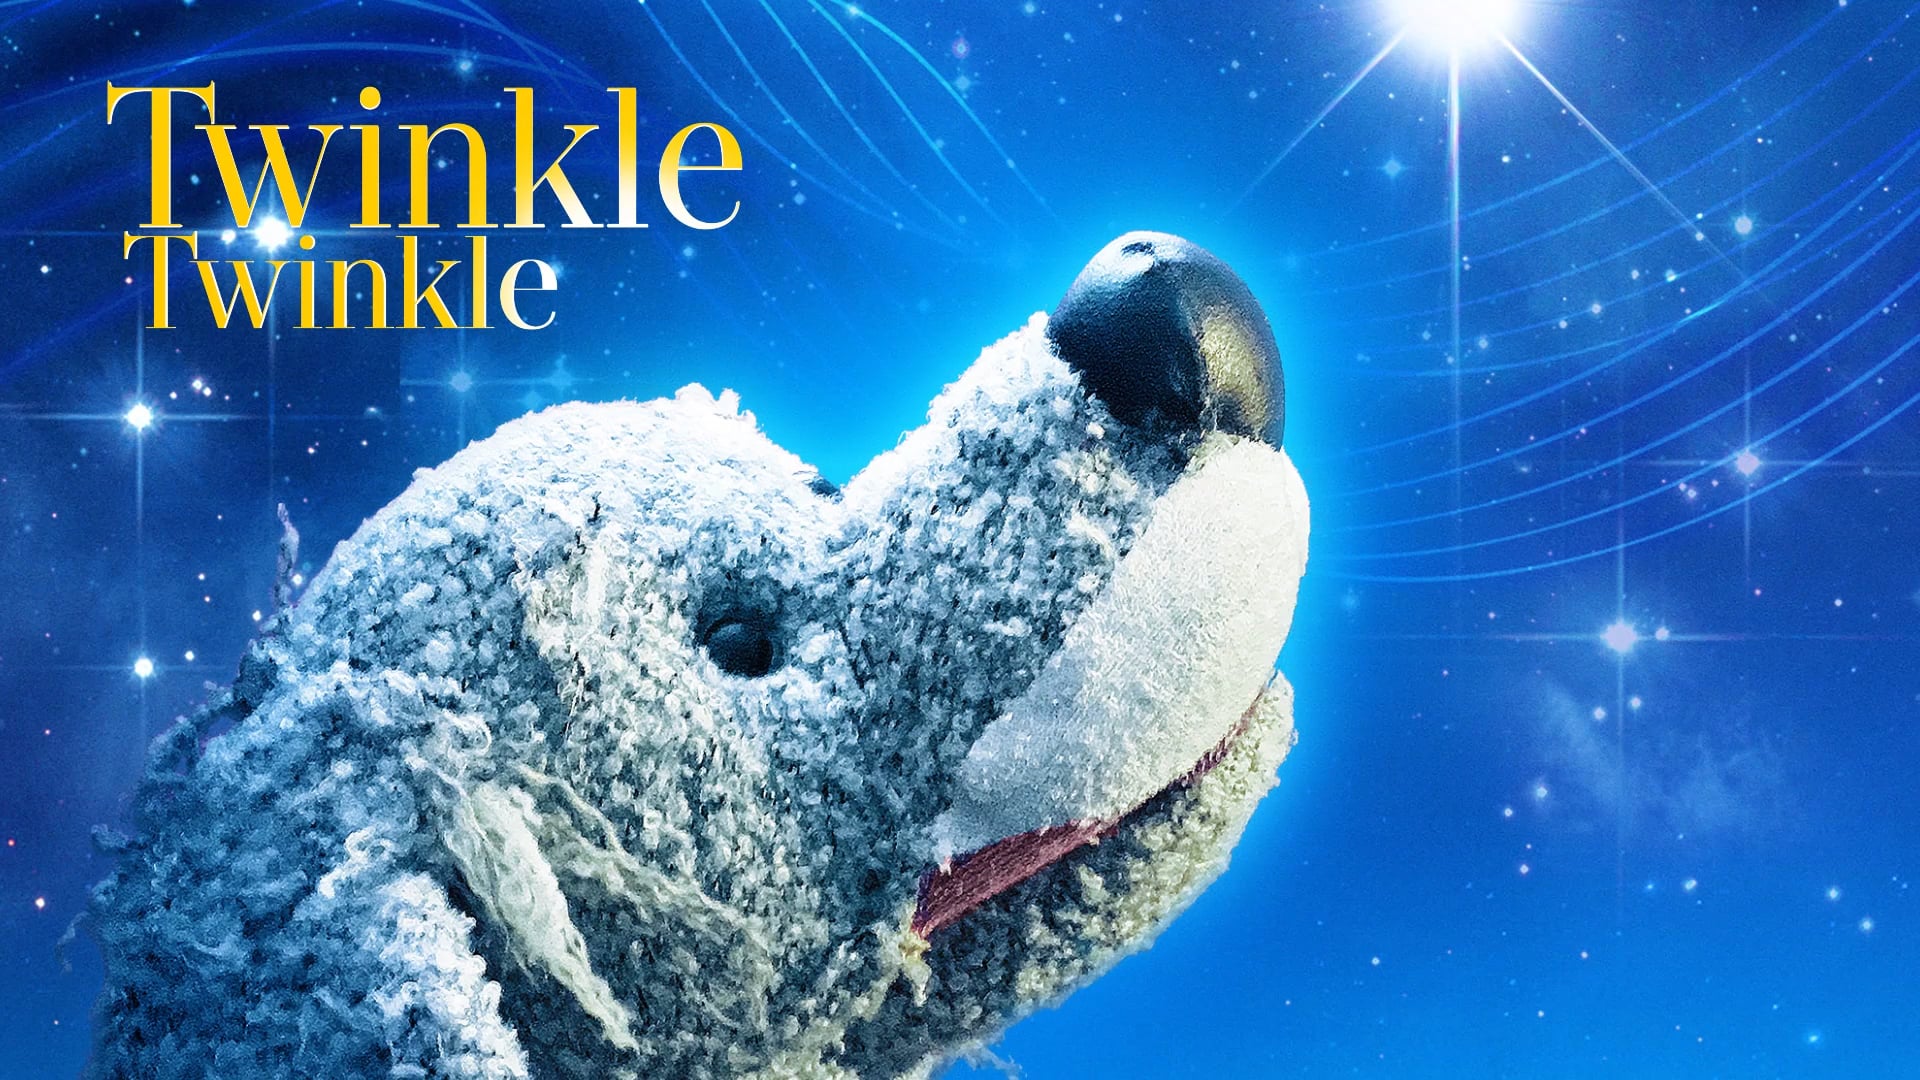 Twinkle Twinkle promo 2018